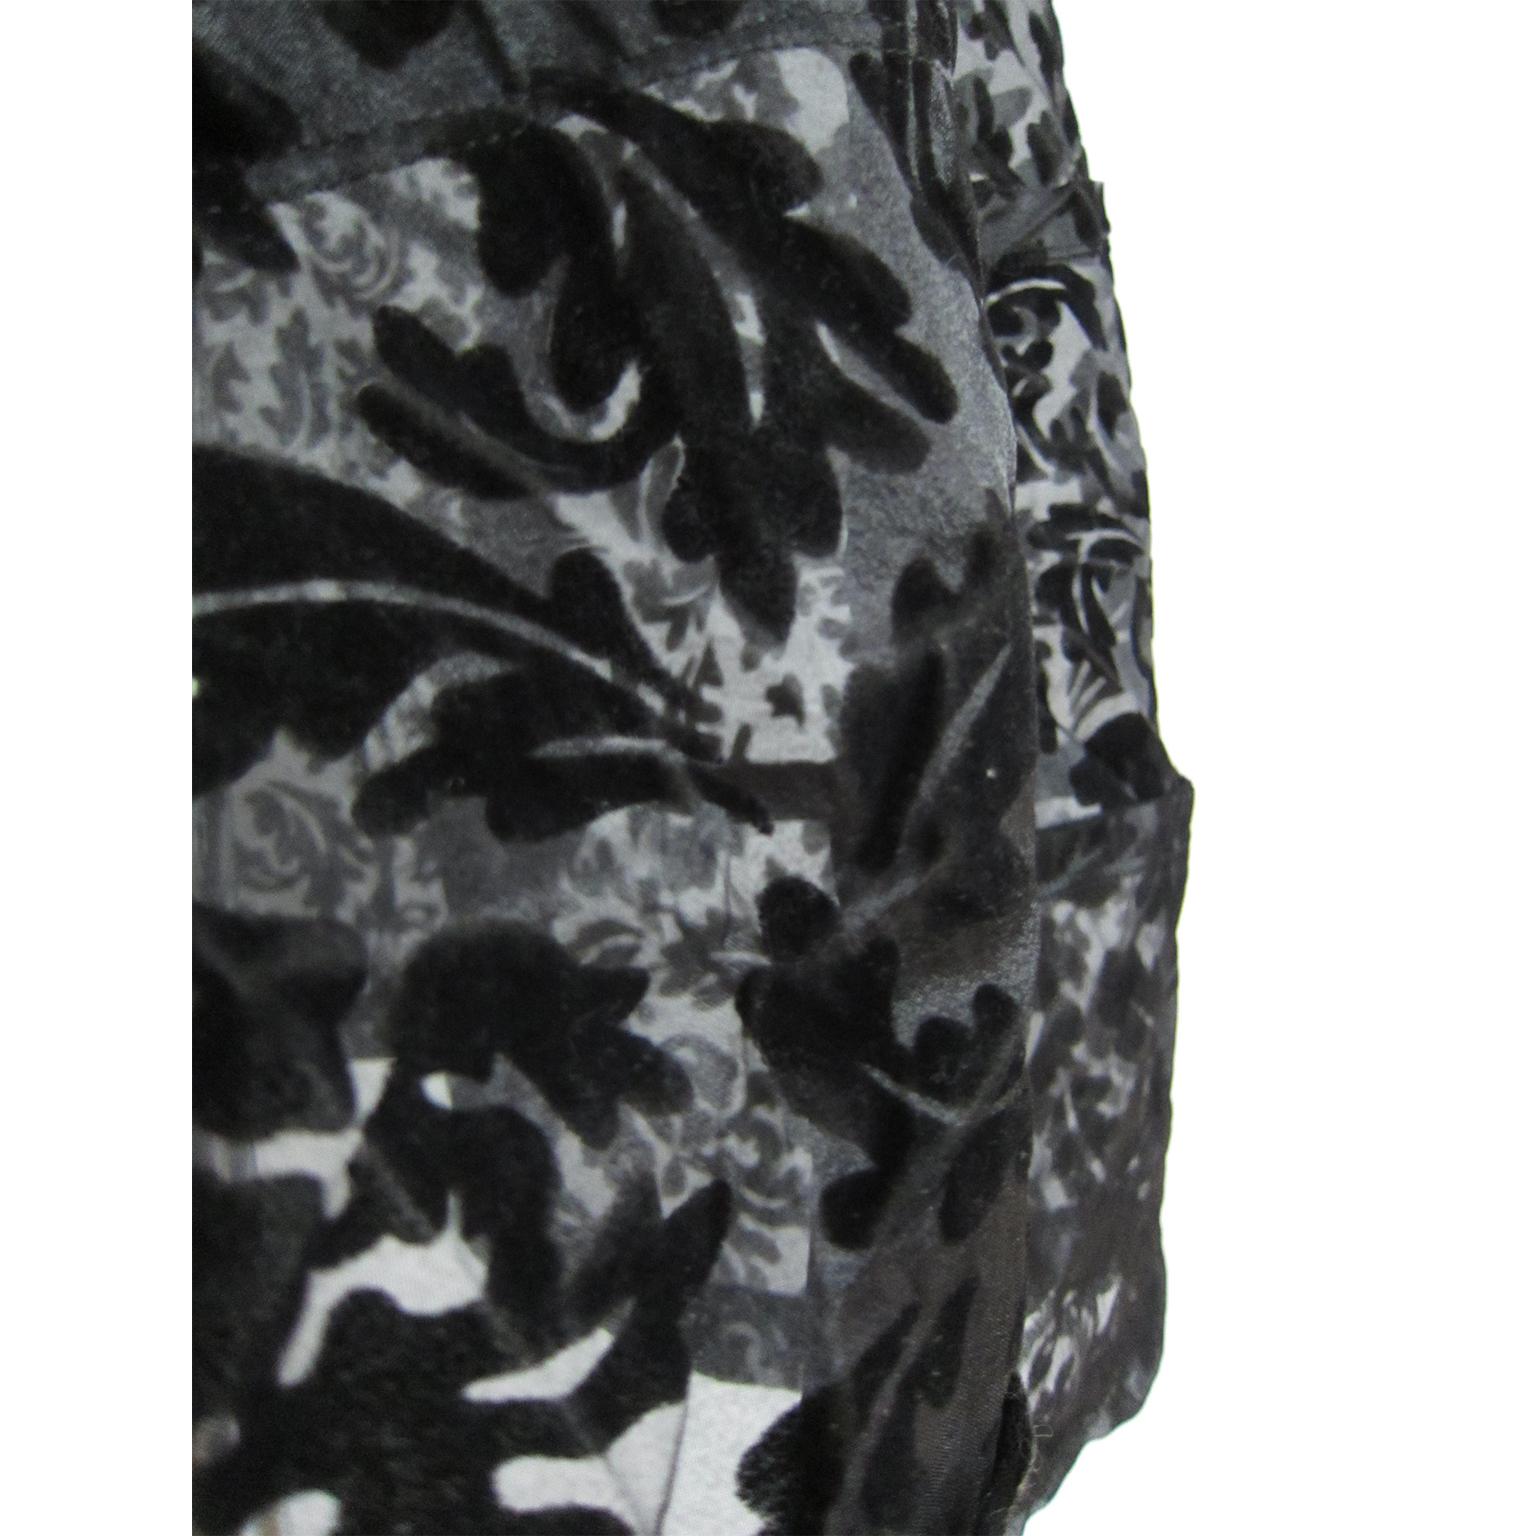 Comme des Garcons Spiral Black Floral Flare Skirt AD 2003 2